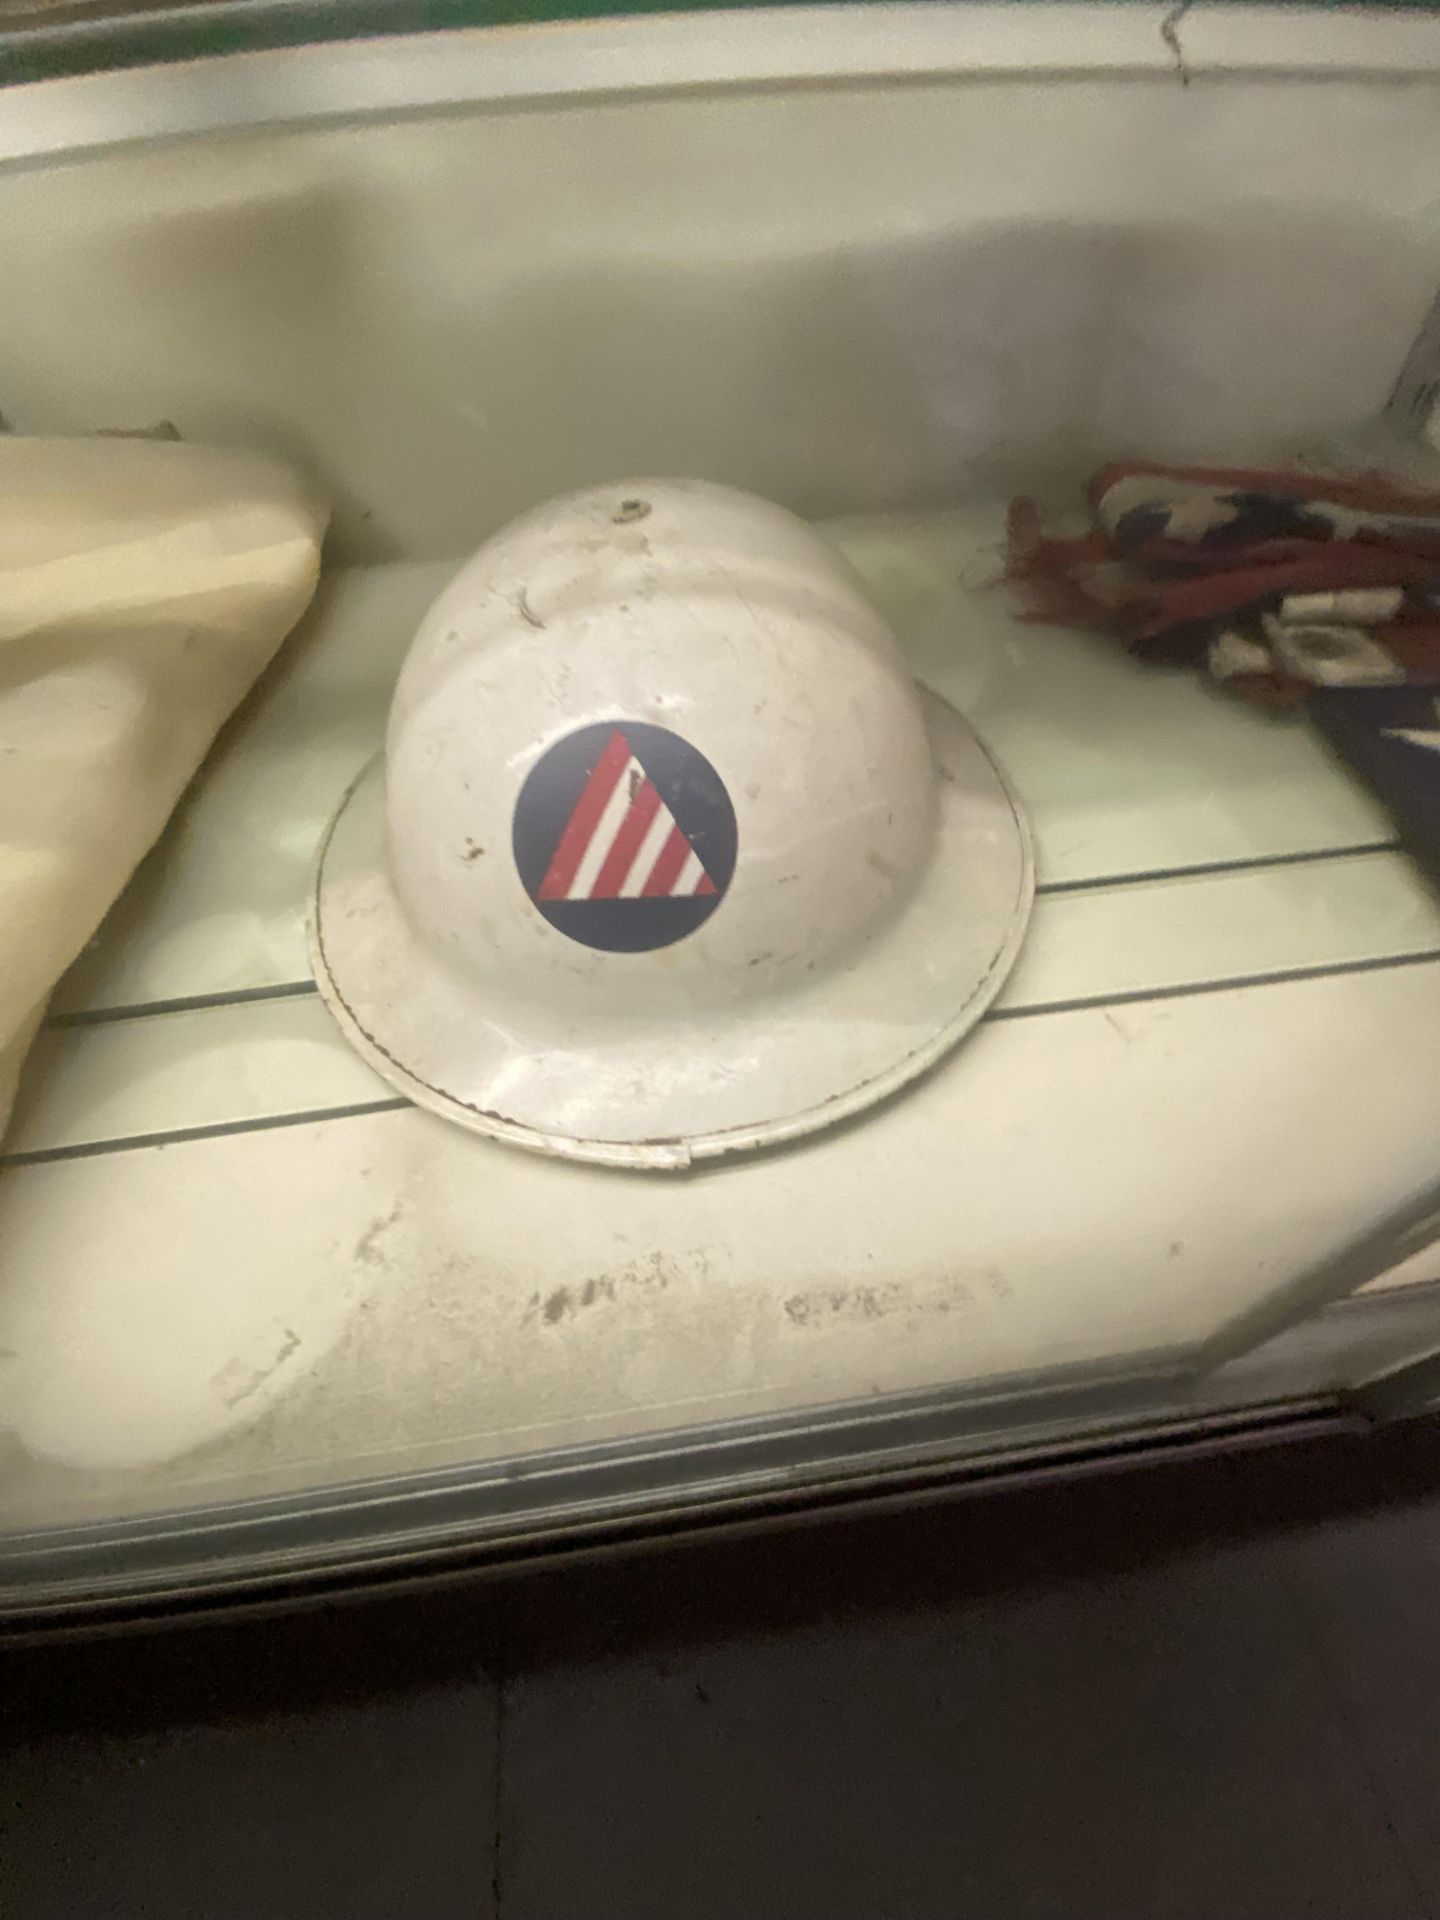 {LOT} On 1 Shelf w/(2) Asst. Helmets, Old Navy Blanket, And (2) Asst. Gauges - Image 5 of 6